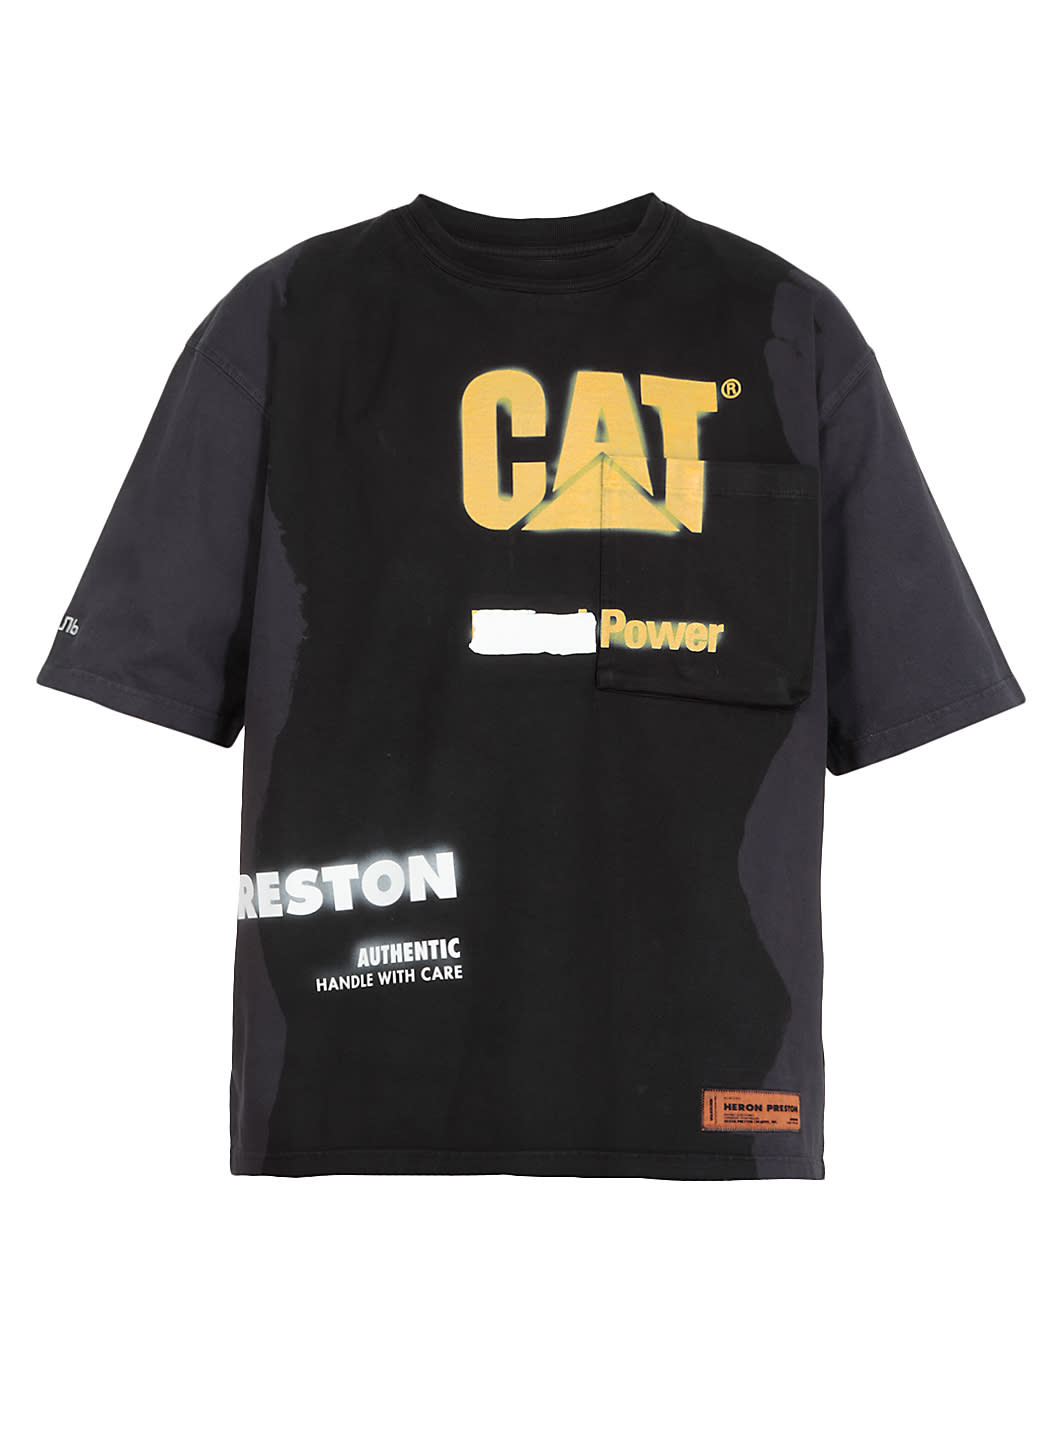 ブランドおしゃれ 【Heron Preston】CAT TEE SS REG PKT POWER 要在庫確認:EXPECTATION